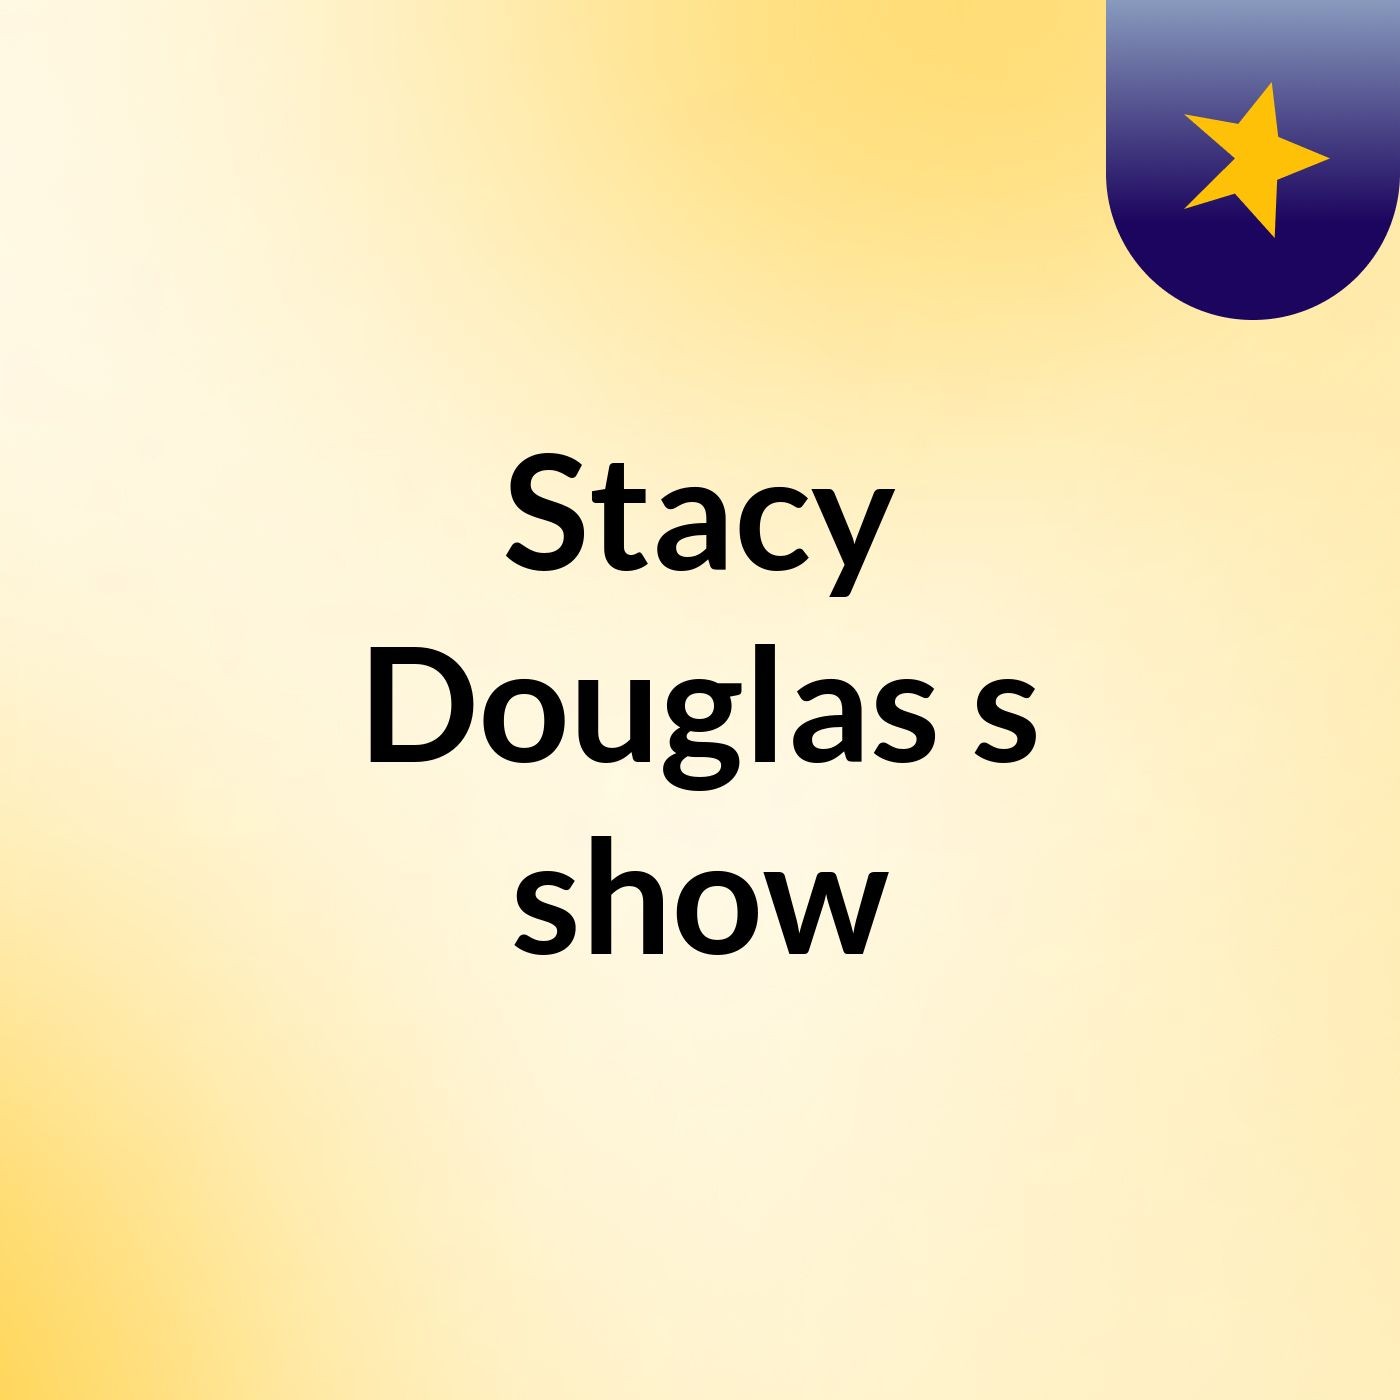 Stacy Douglas's show